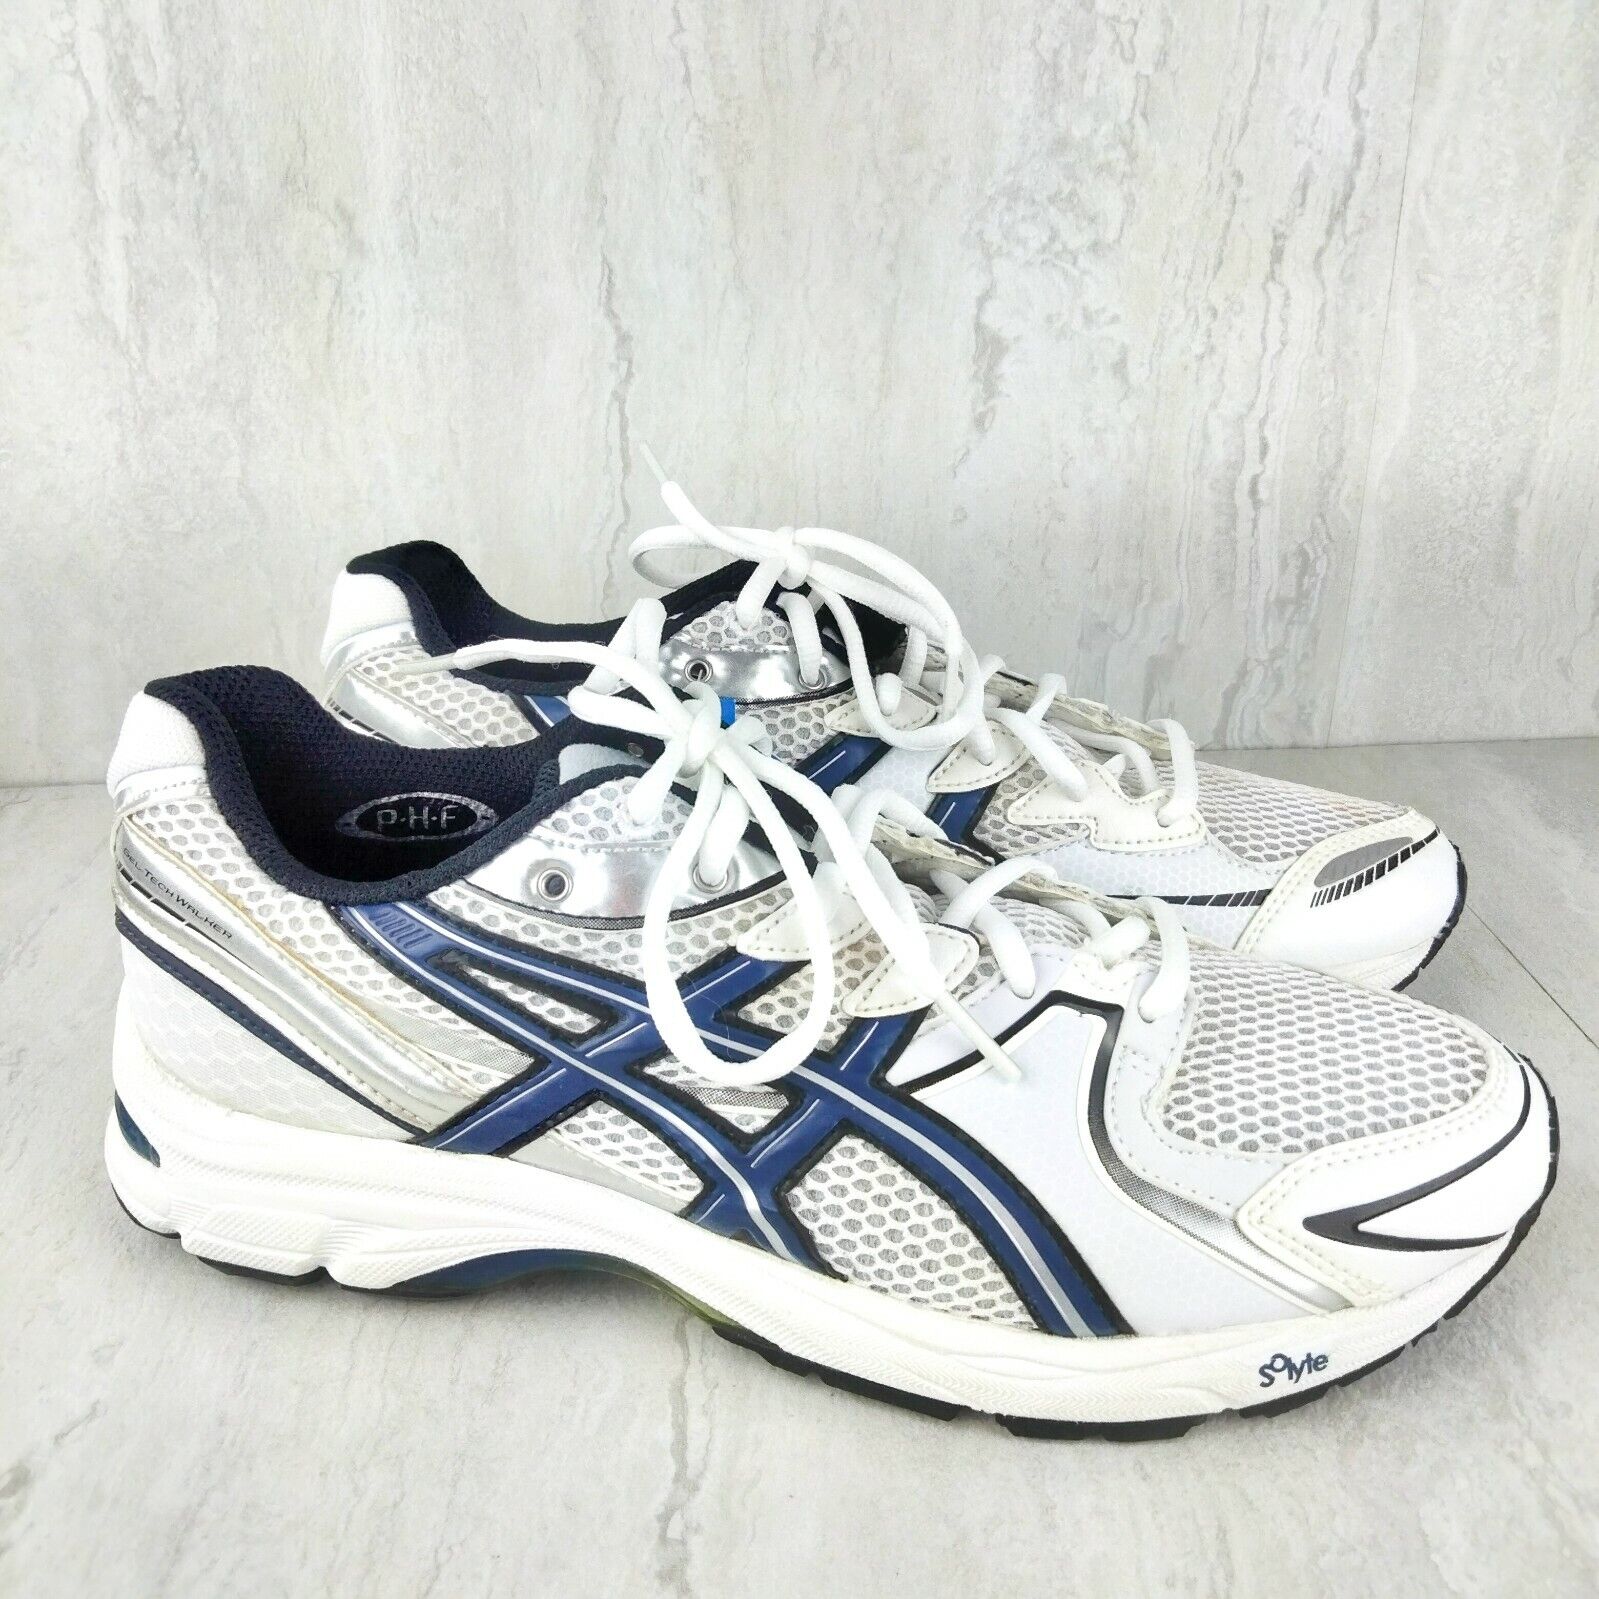 ASICS Men’s Gel-Tech Walker Neo Walking Shoe Size 7.5 White Silver Blue ...